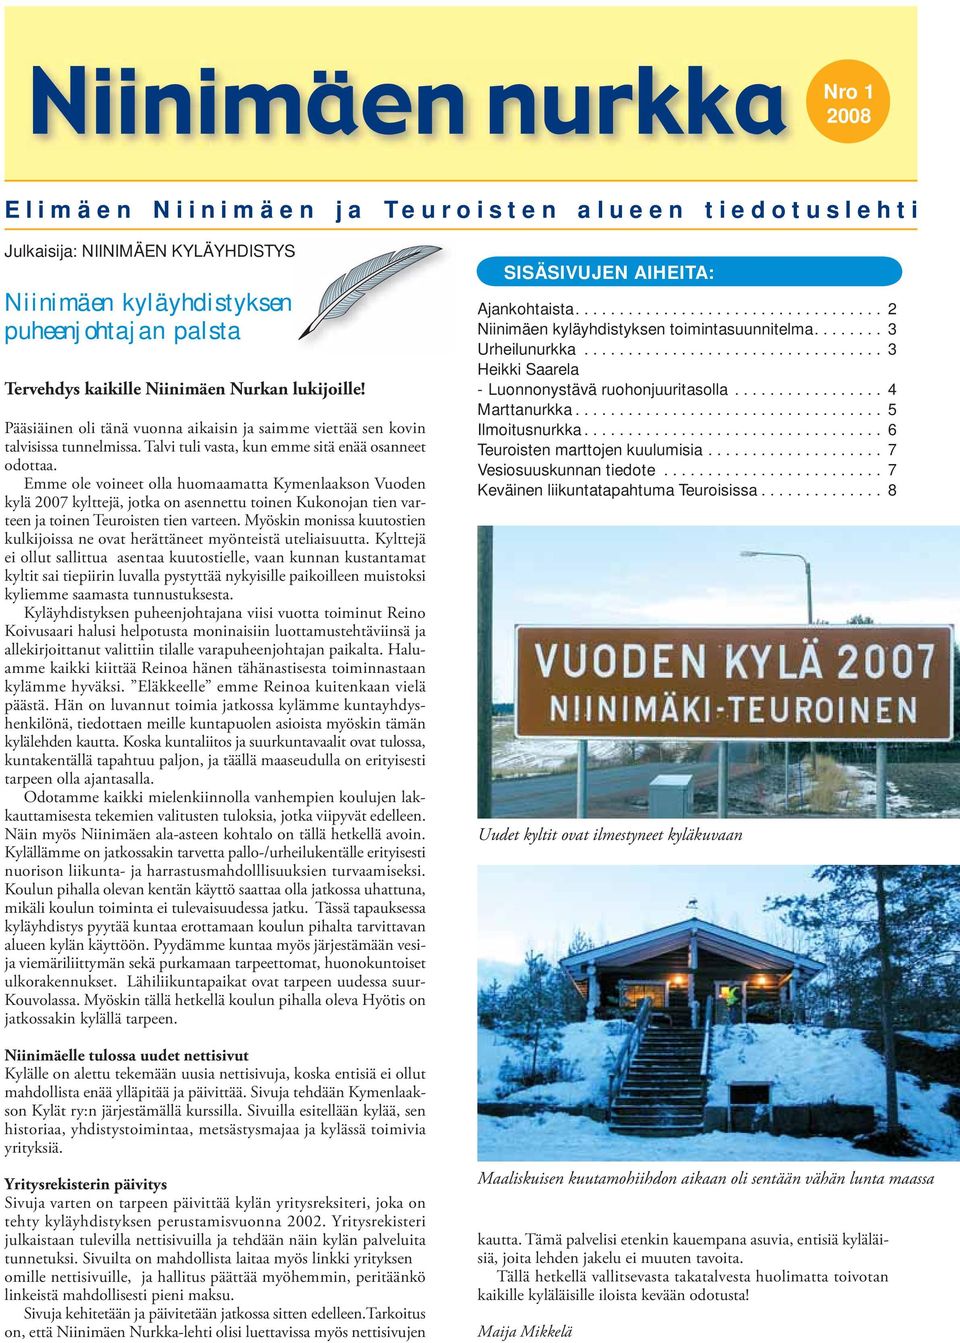 Emme ole voineet olla huomaamatta Kymenlaakson Vuoden kylä 2007 kylttejä, jotka on asennettu toinen Kukonojan tien varteen ja toinen Teuroisten tien varteen.